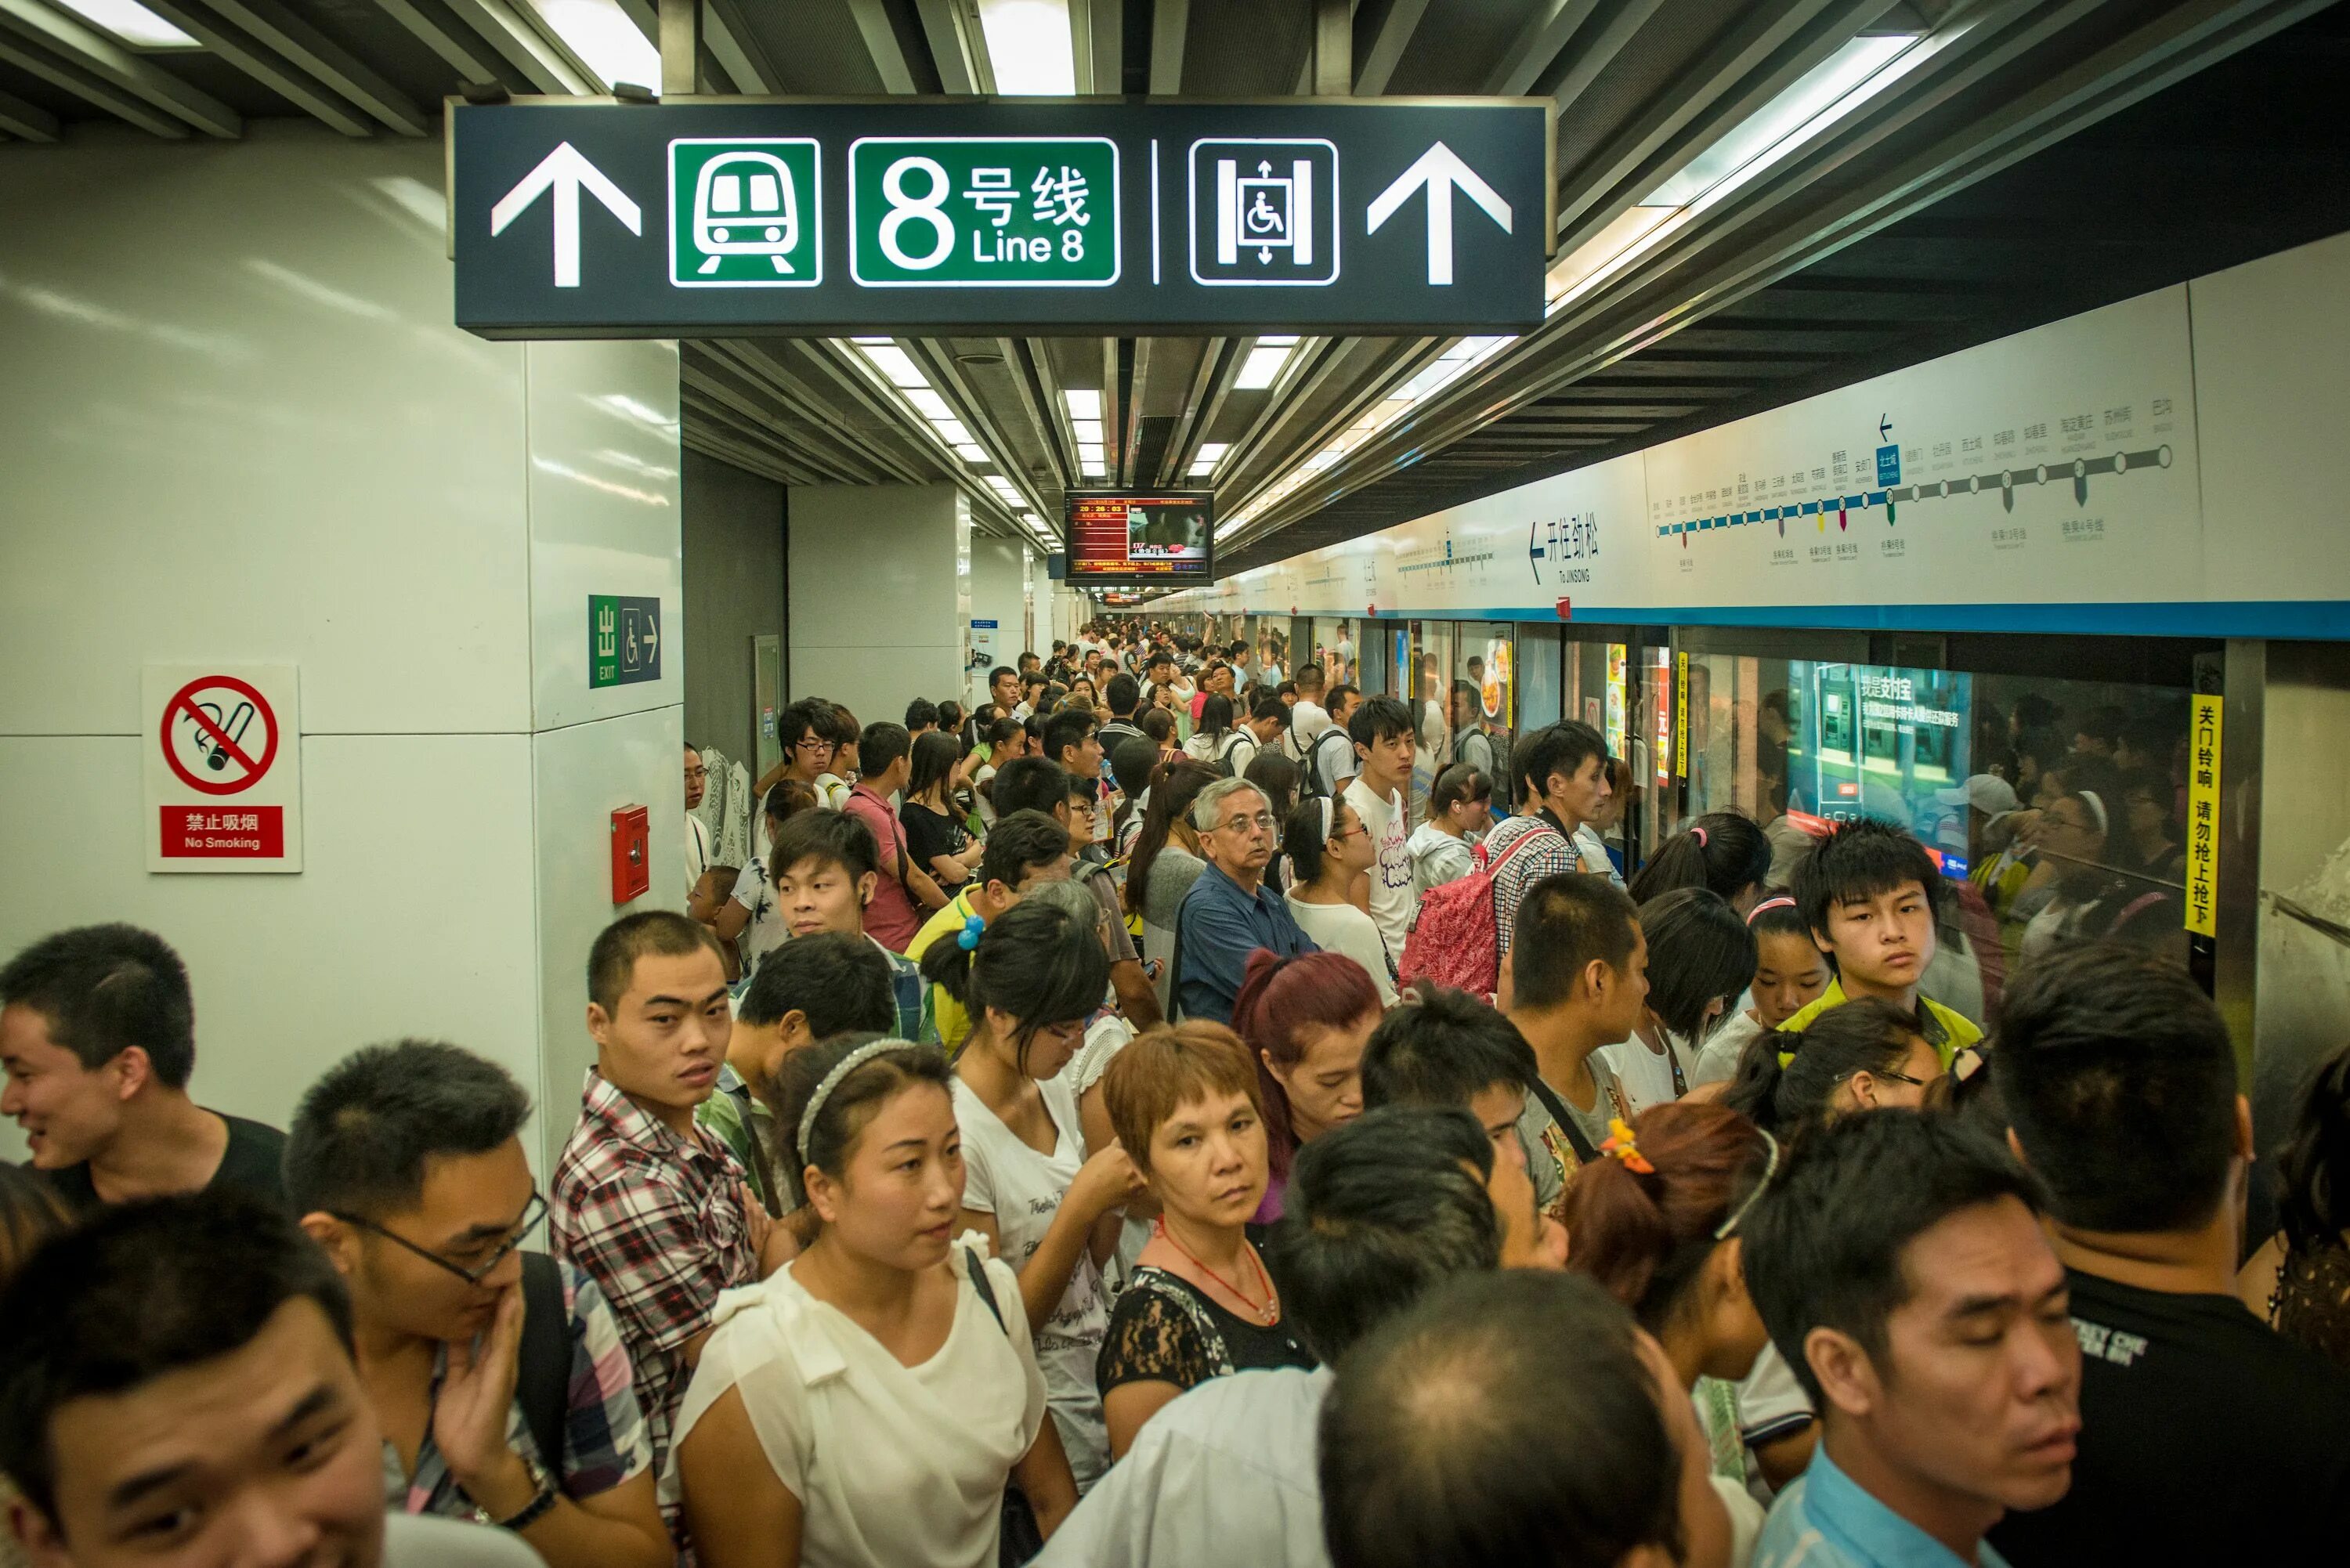 Metro Beijing Subway. China Beijing Subway. Метро в Китае. Метро Китая Пекин. В январе 2017 из китая в лондон